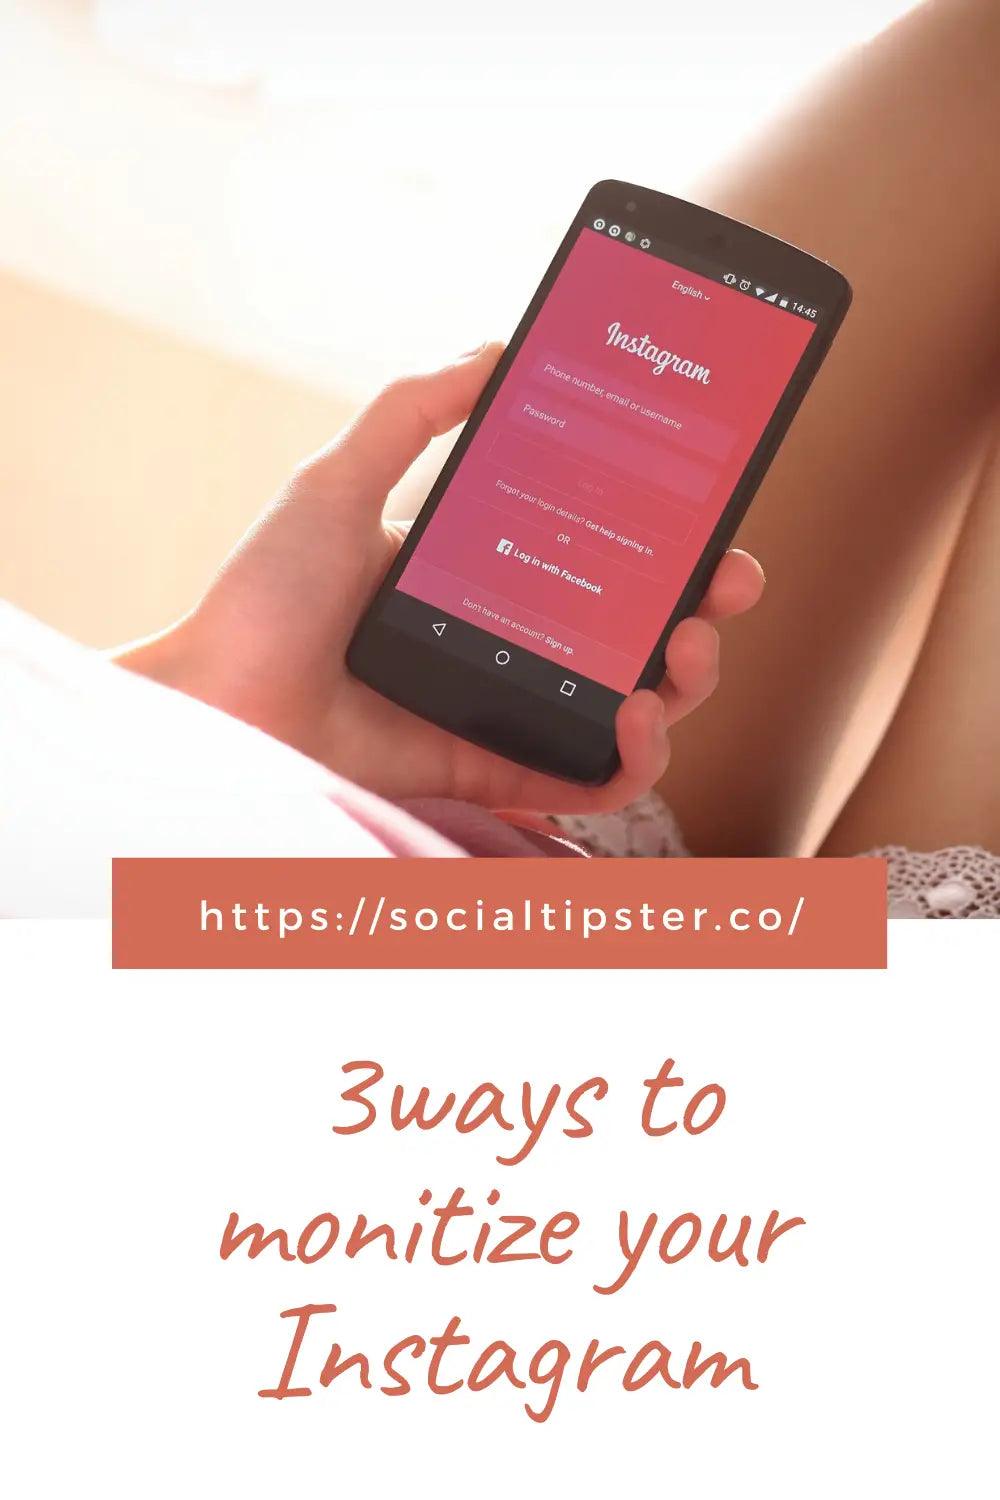 monetize your instagram;monetize instagram;monetize your instagram;3 ways to monitize your Instagram